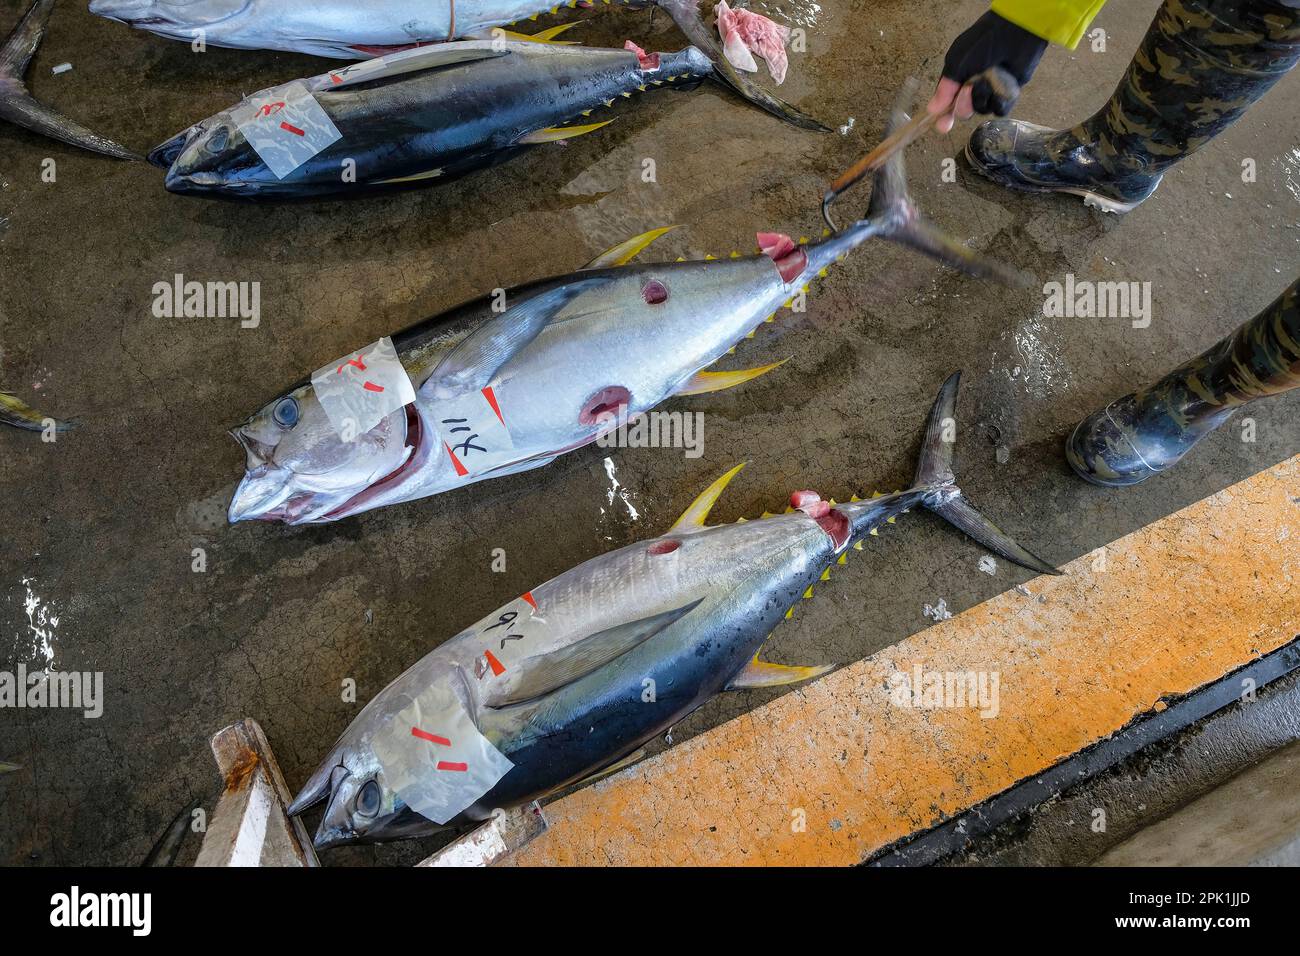 Nachikatsuura, Japon - 19 mars 2023: Thon aux enchères sur le marché du thon à Nachikatsuura dans la péninsule de Kii, Japon. Banque D'Images